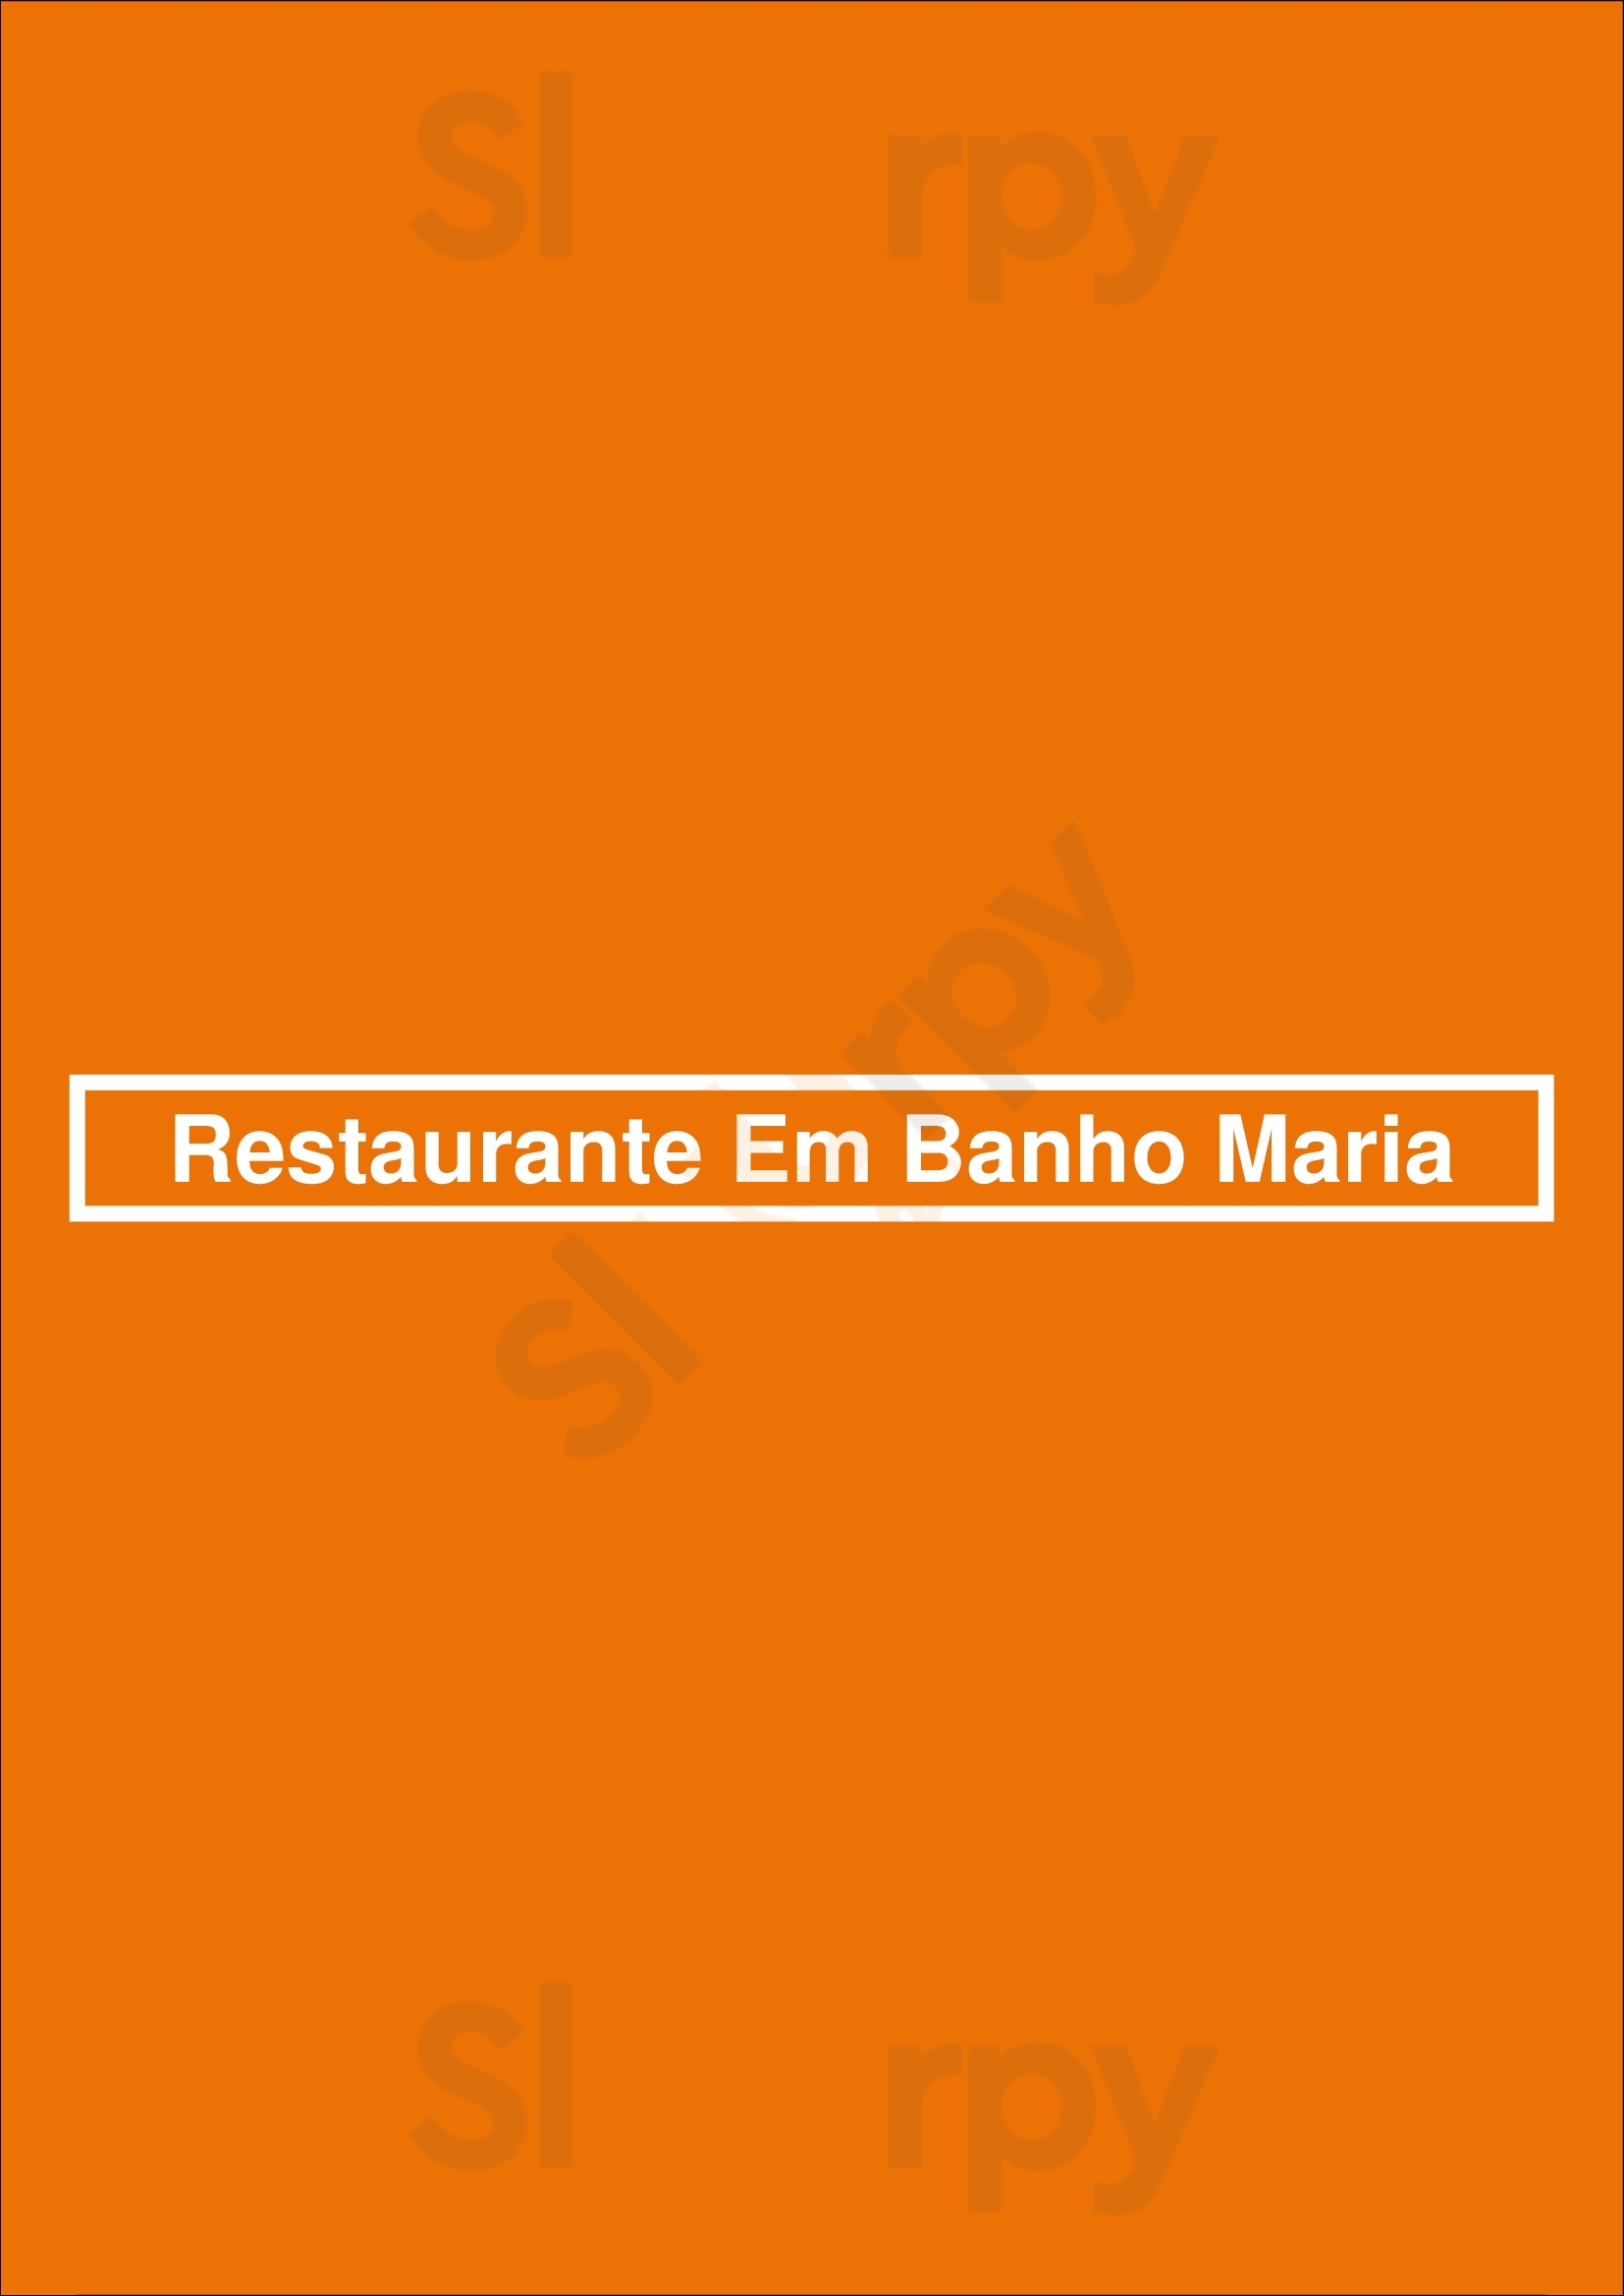 Restaurante Em Banho Maria Serra d'El Rei Menu - 1